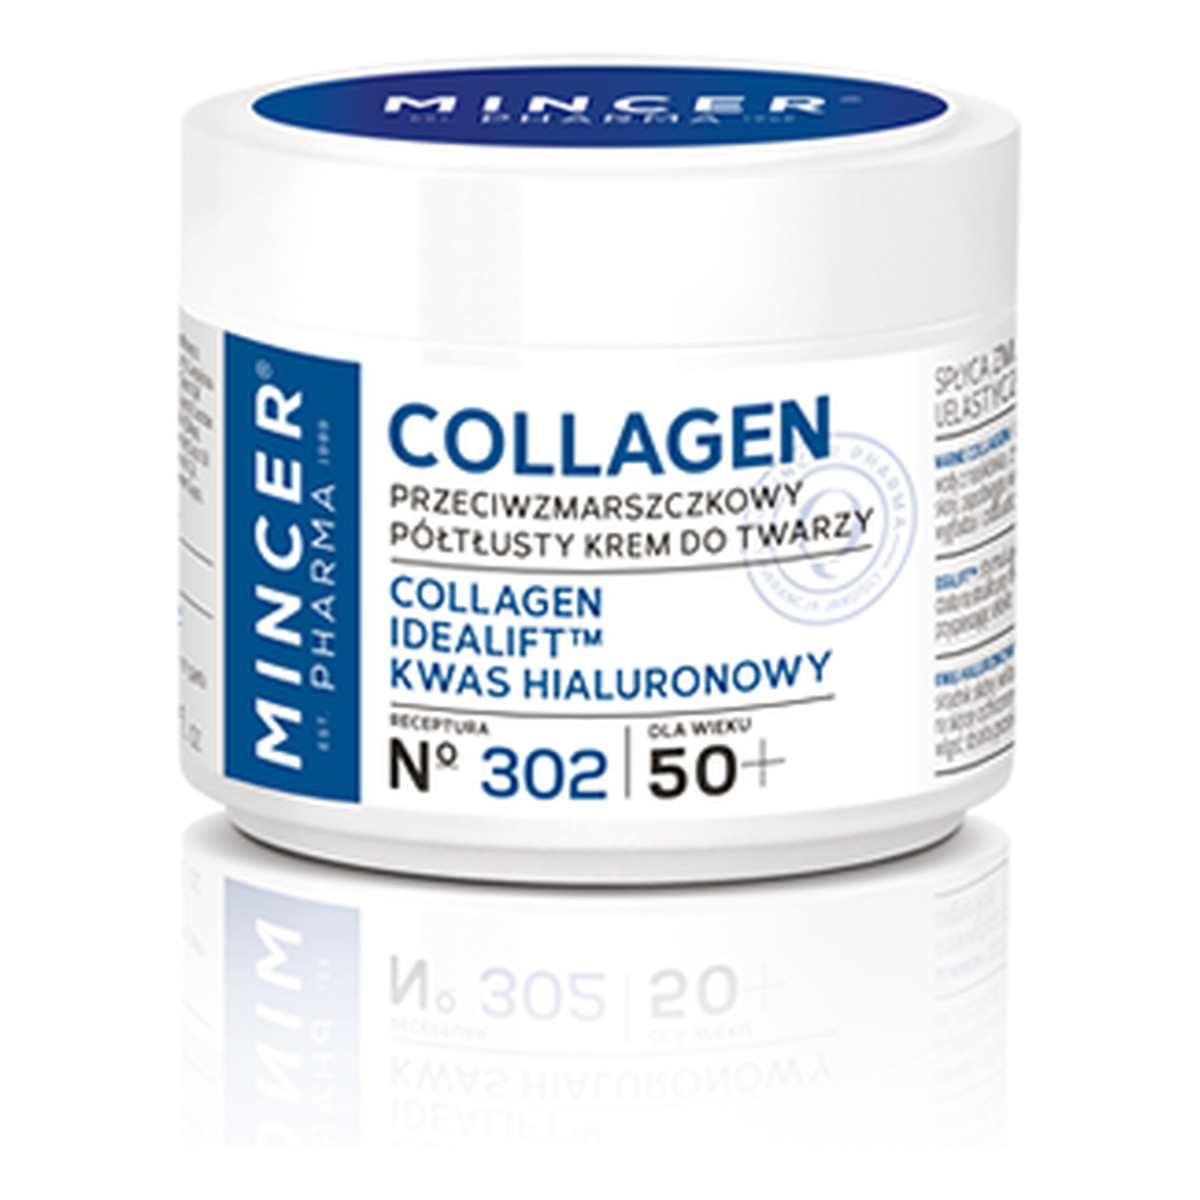 Mincer Pharma Collagen 50+ Krem Do Twarzy Przeciwzmarszczkowy Półtłusty No302 50ml